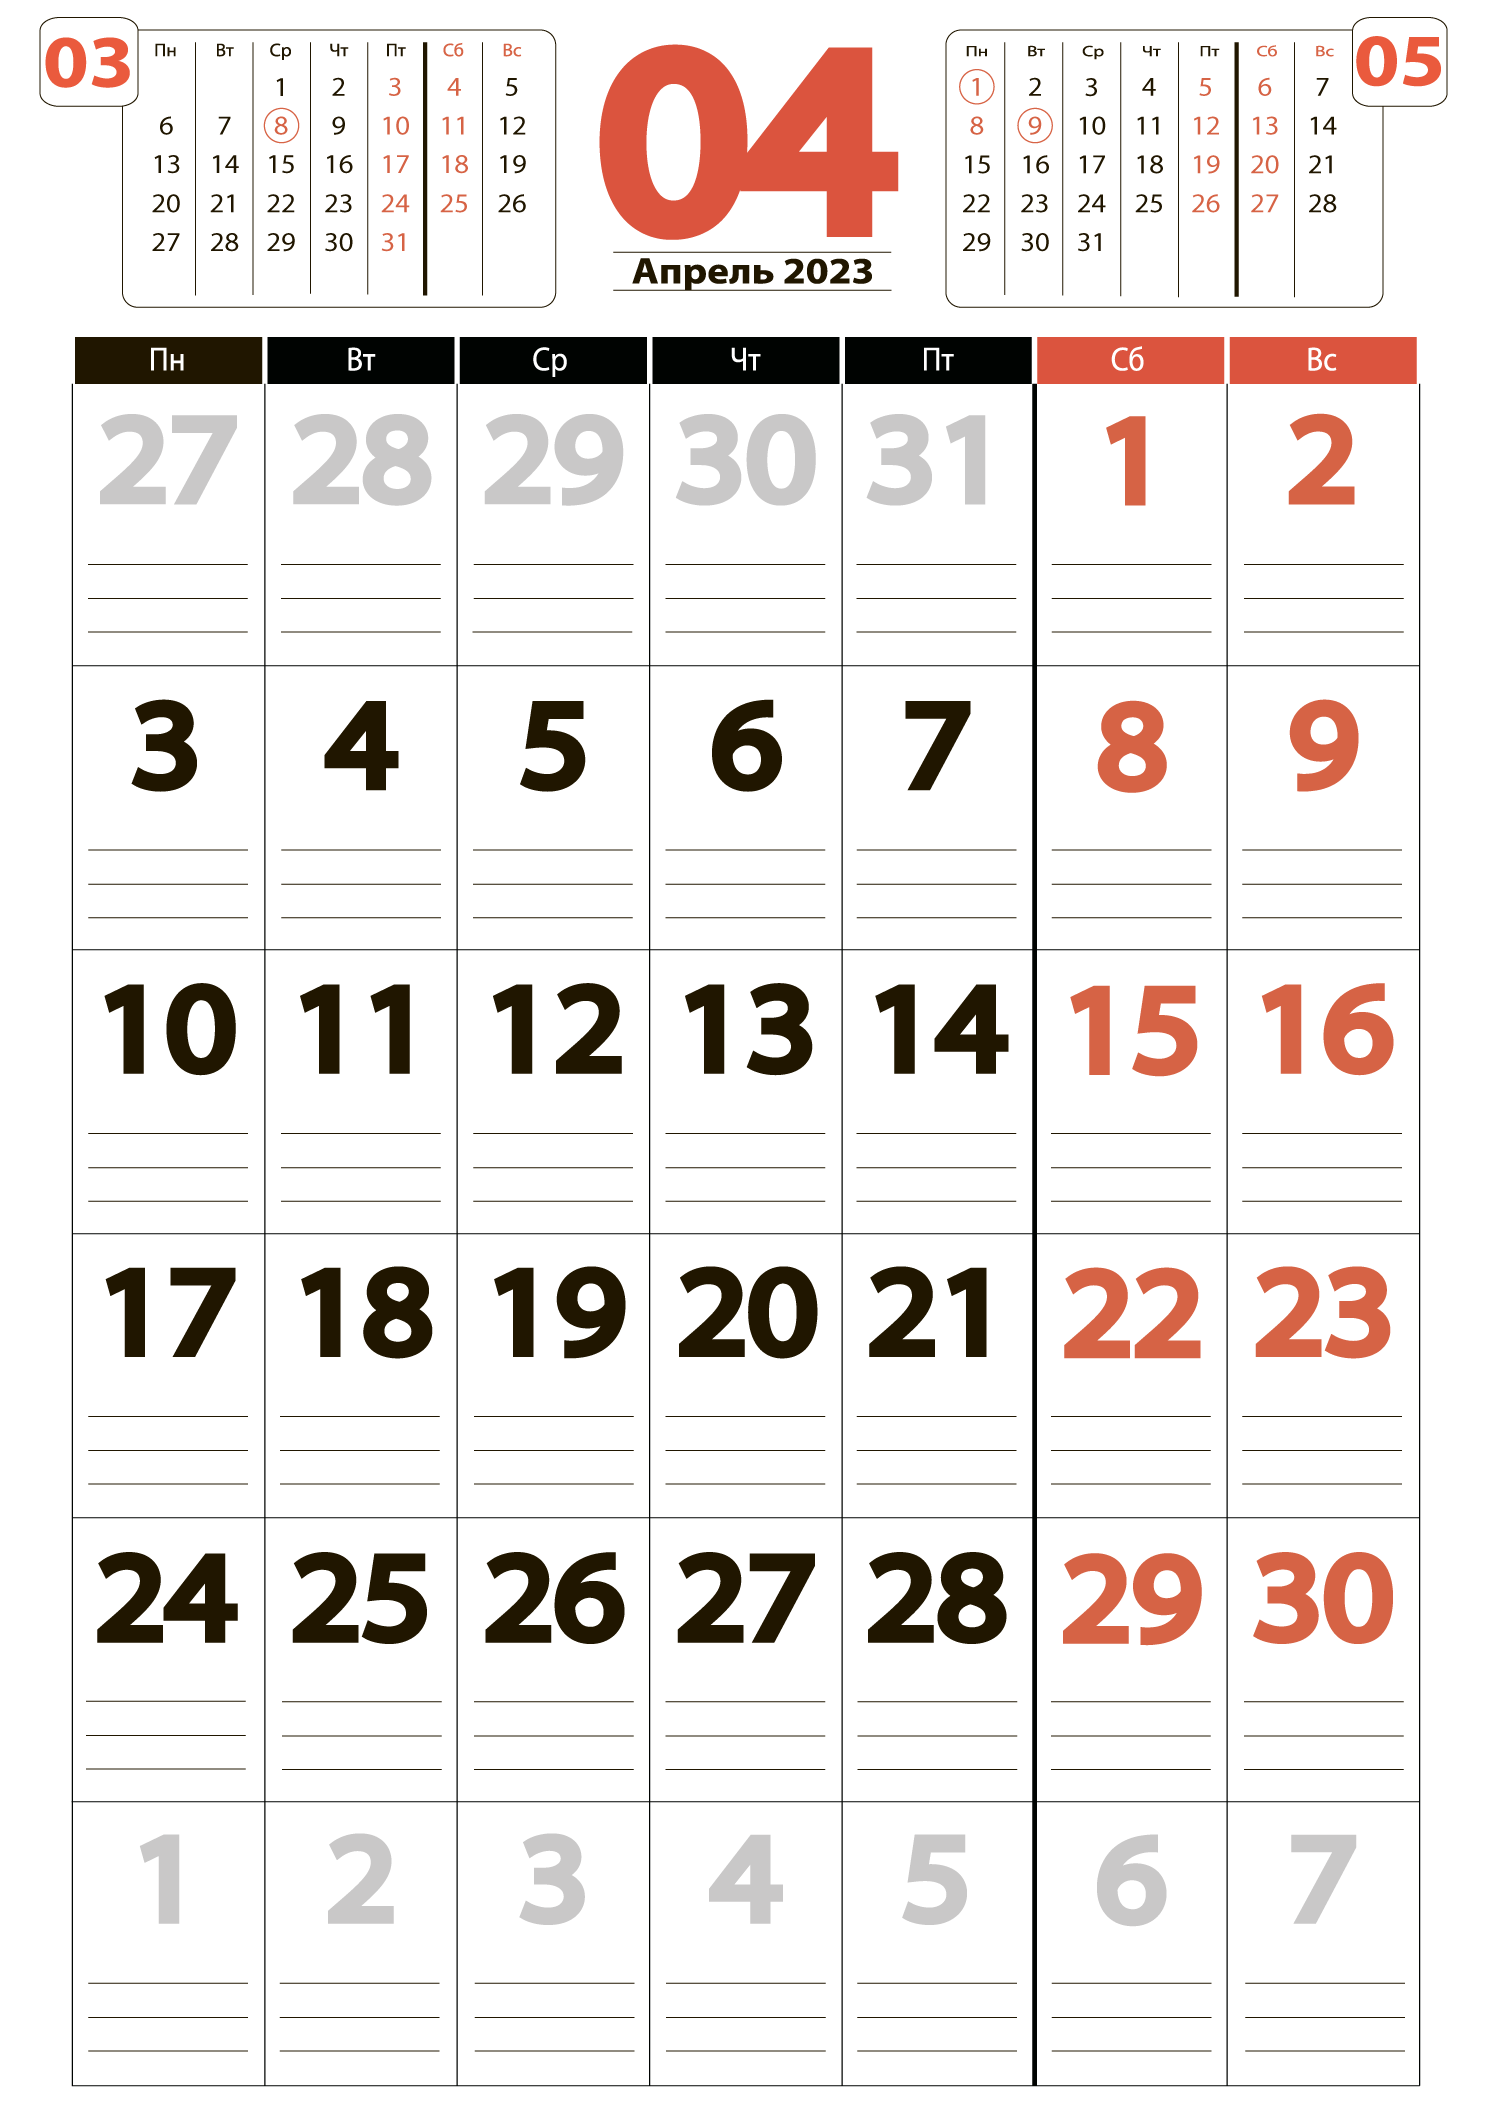 Печать крупного календаря на апрель 2023